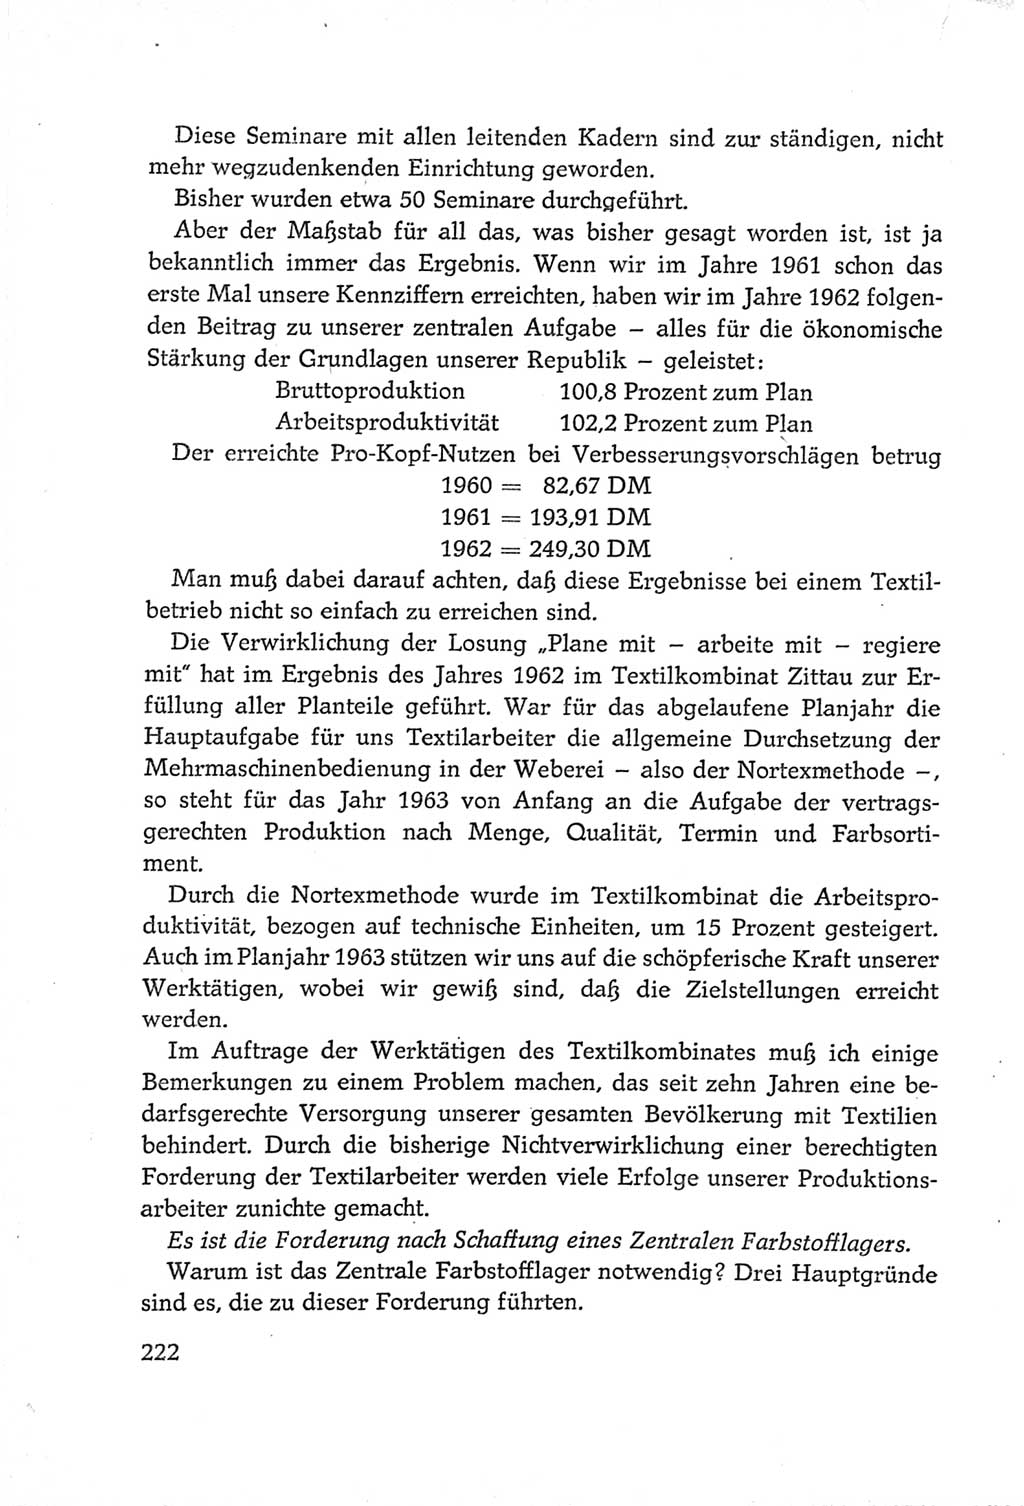 Protokoll der Verhandlungen des Ⅵ. Parteitages der Sozialistischen Einheitspartei Deutschlands (SED) [Deutsche Demokratische Republik (DDR)] 1963, Band Ⅲ, Seite 222 (Prot. Verh. Ⅵ. PT SED DDR 1963, Bd. Ⅲ, S. 222)